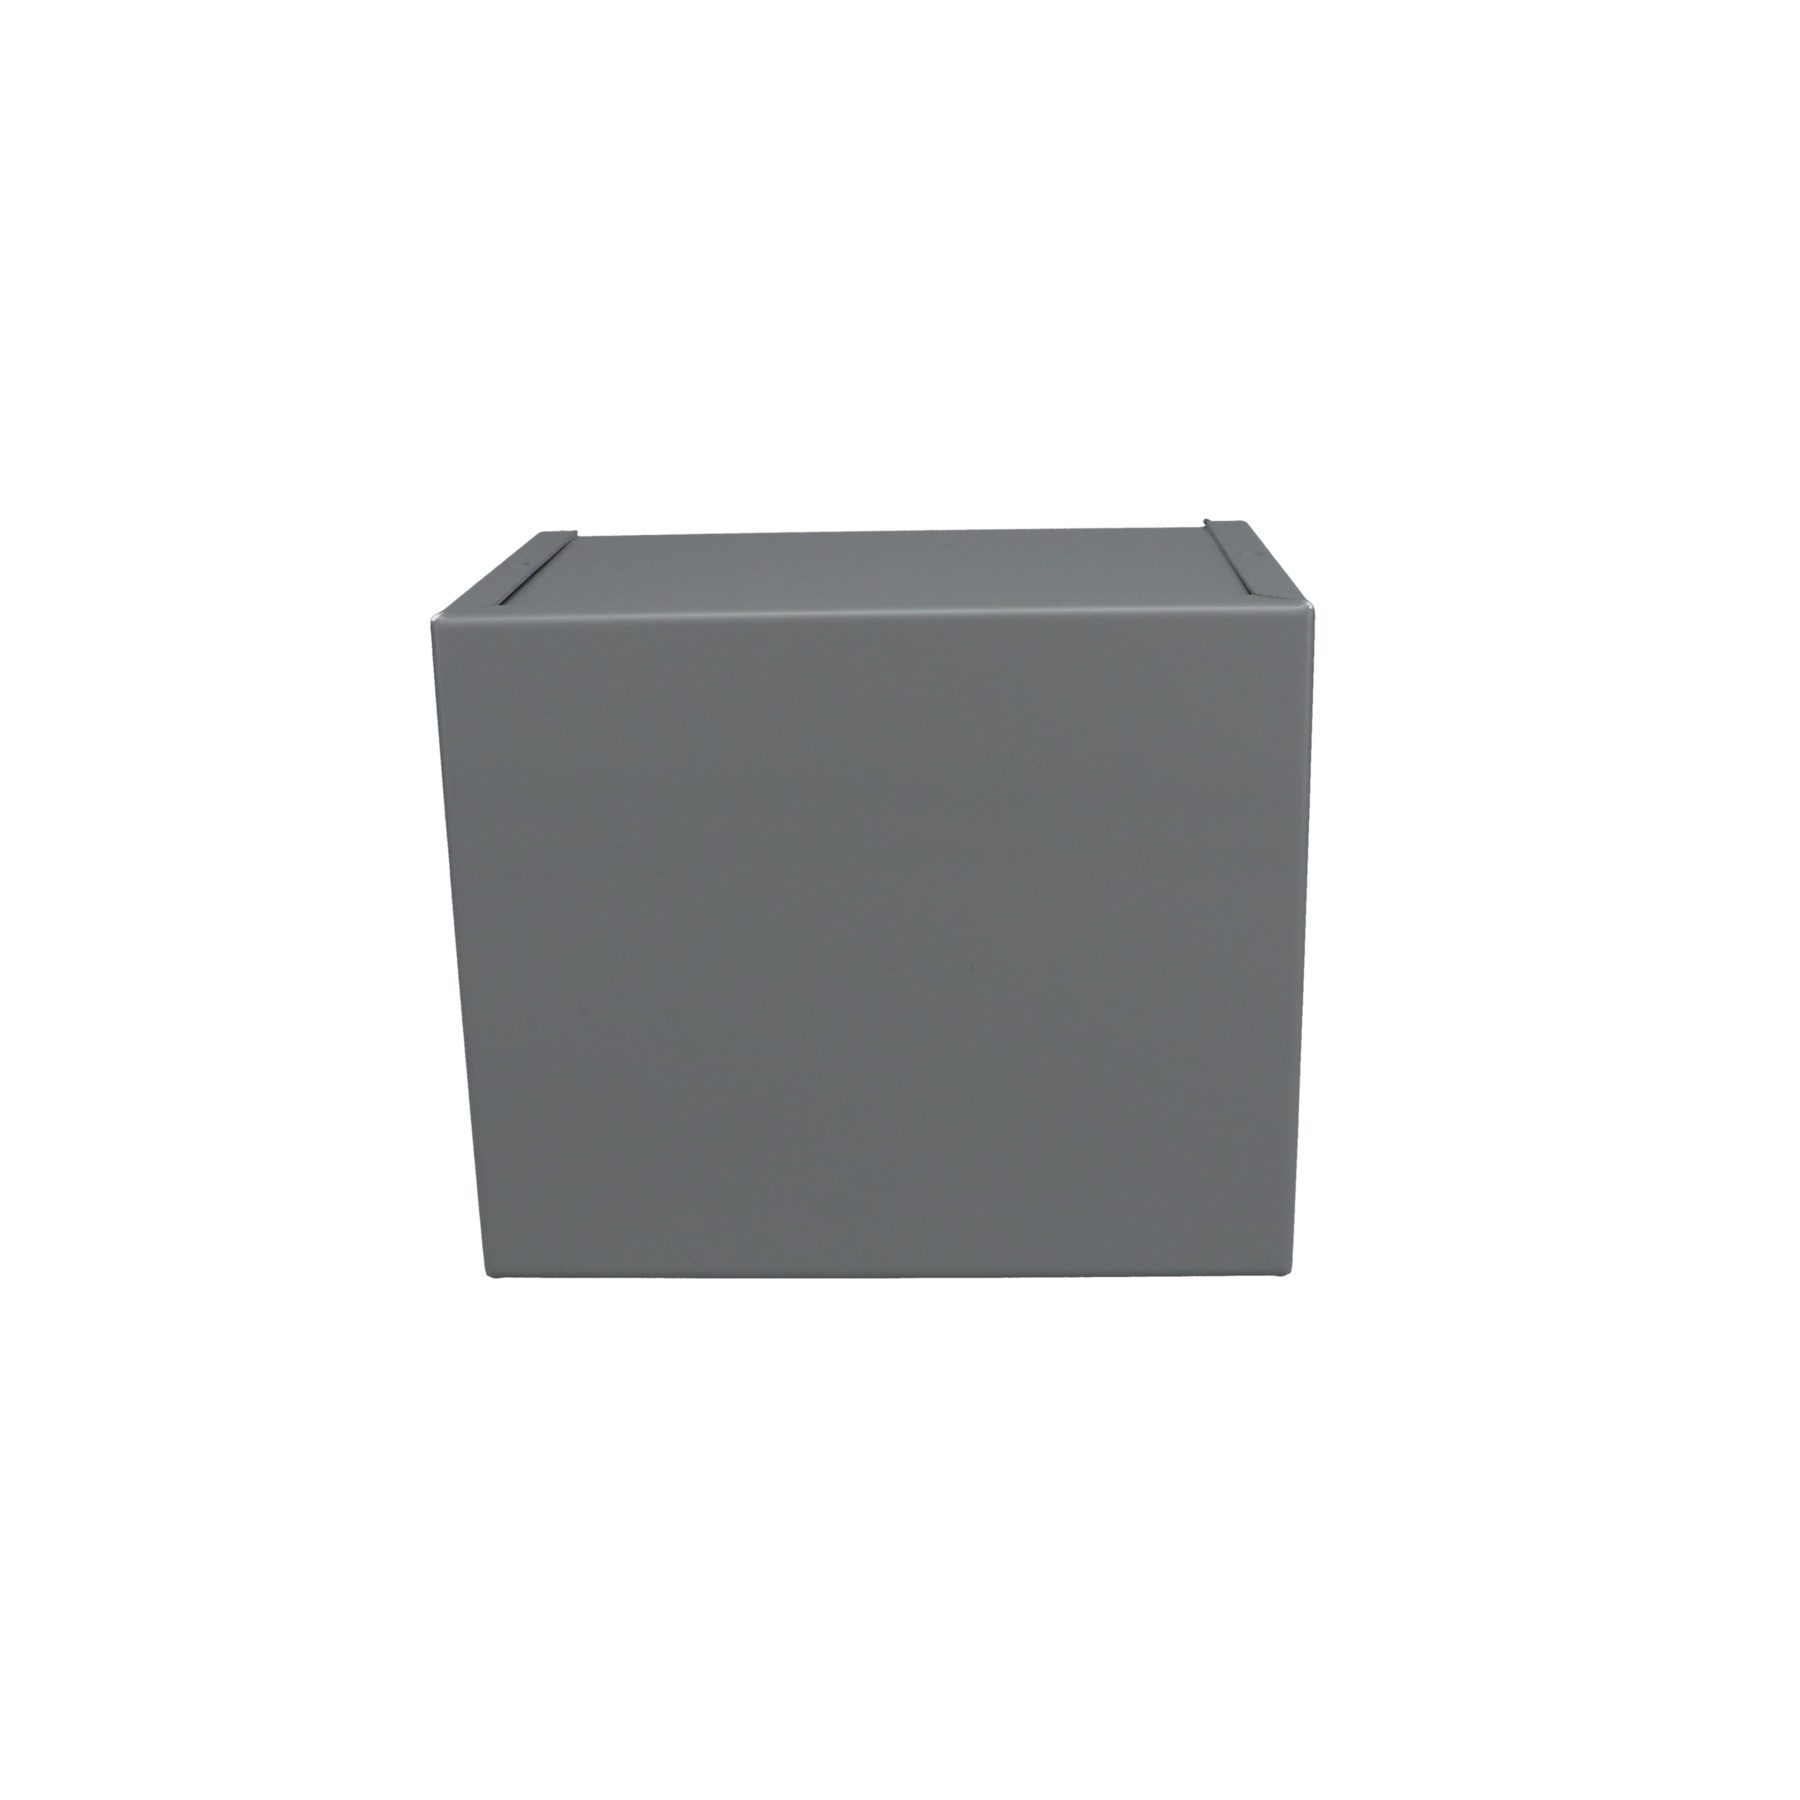 Minibox Small Metal Box Gray CU-2107-B